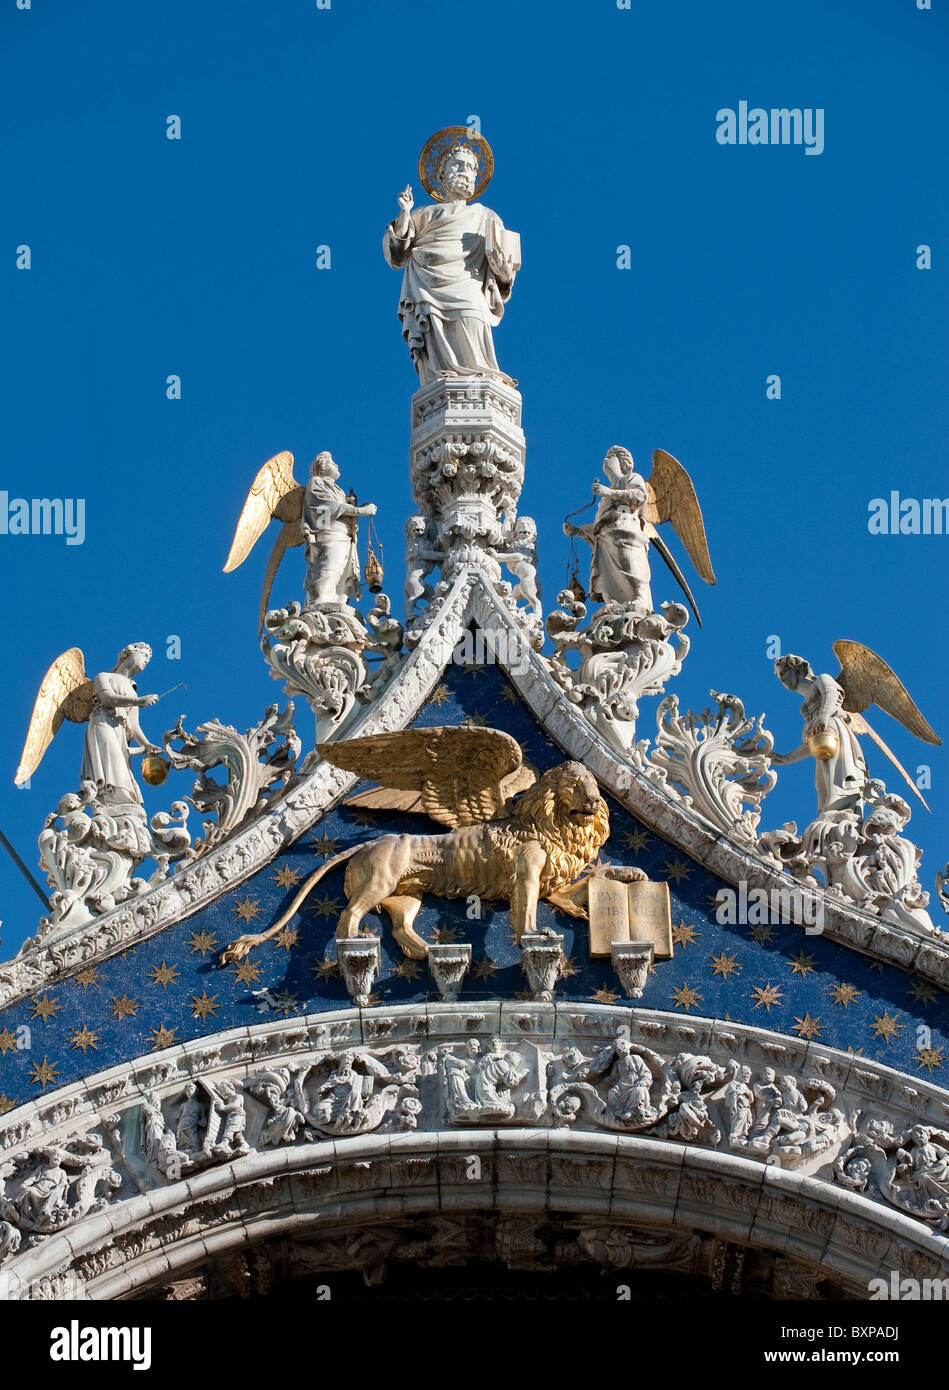 San Marco statua e leone alato sulla sommità della facciata della basilica di San Marco, Venezia, Italia Foto Stock